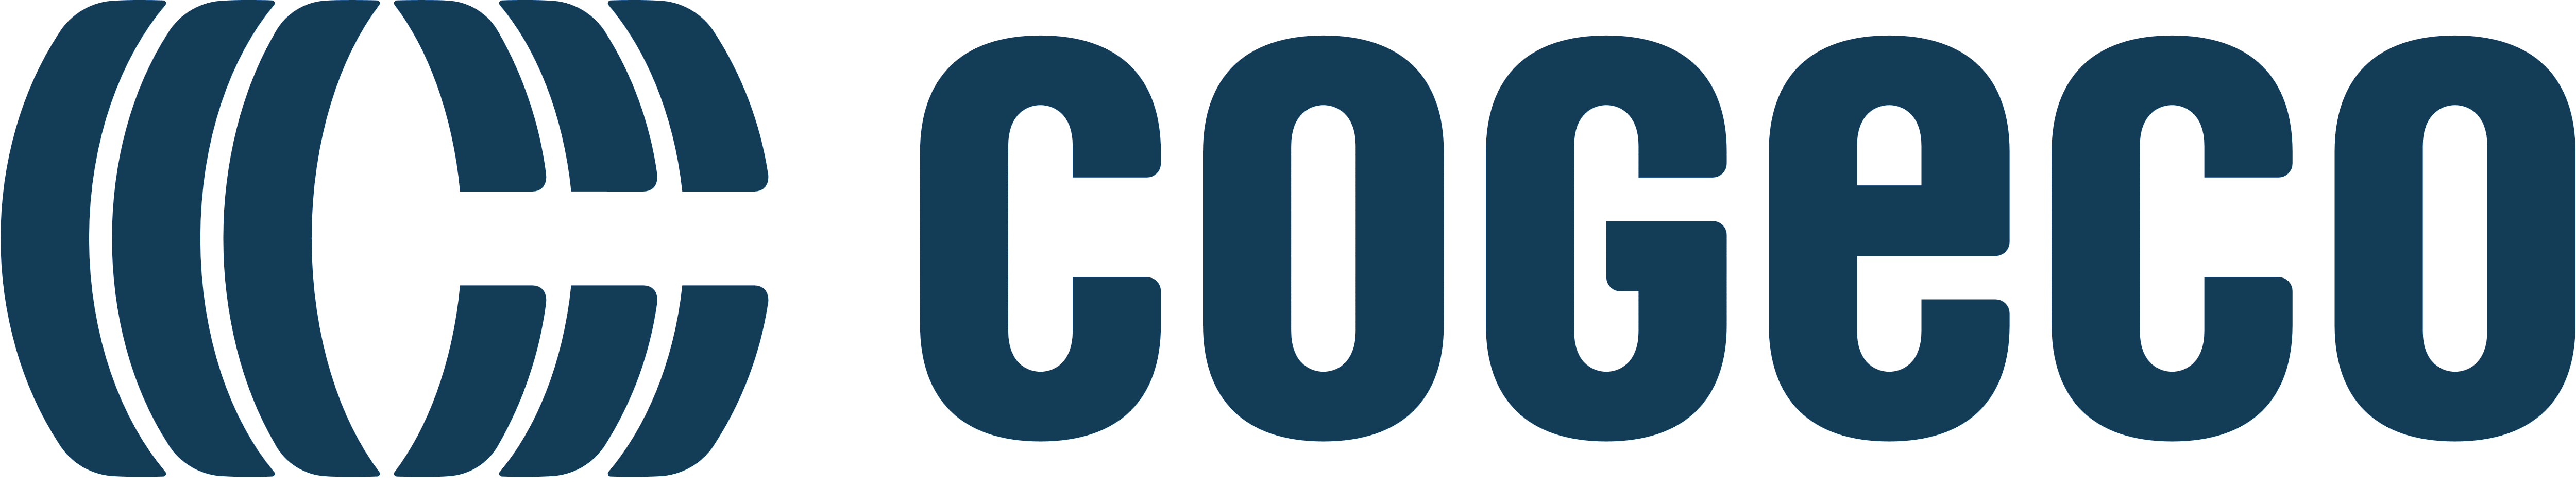 Cogeco – Logos Download